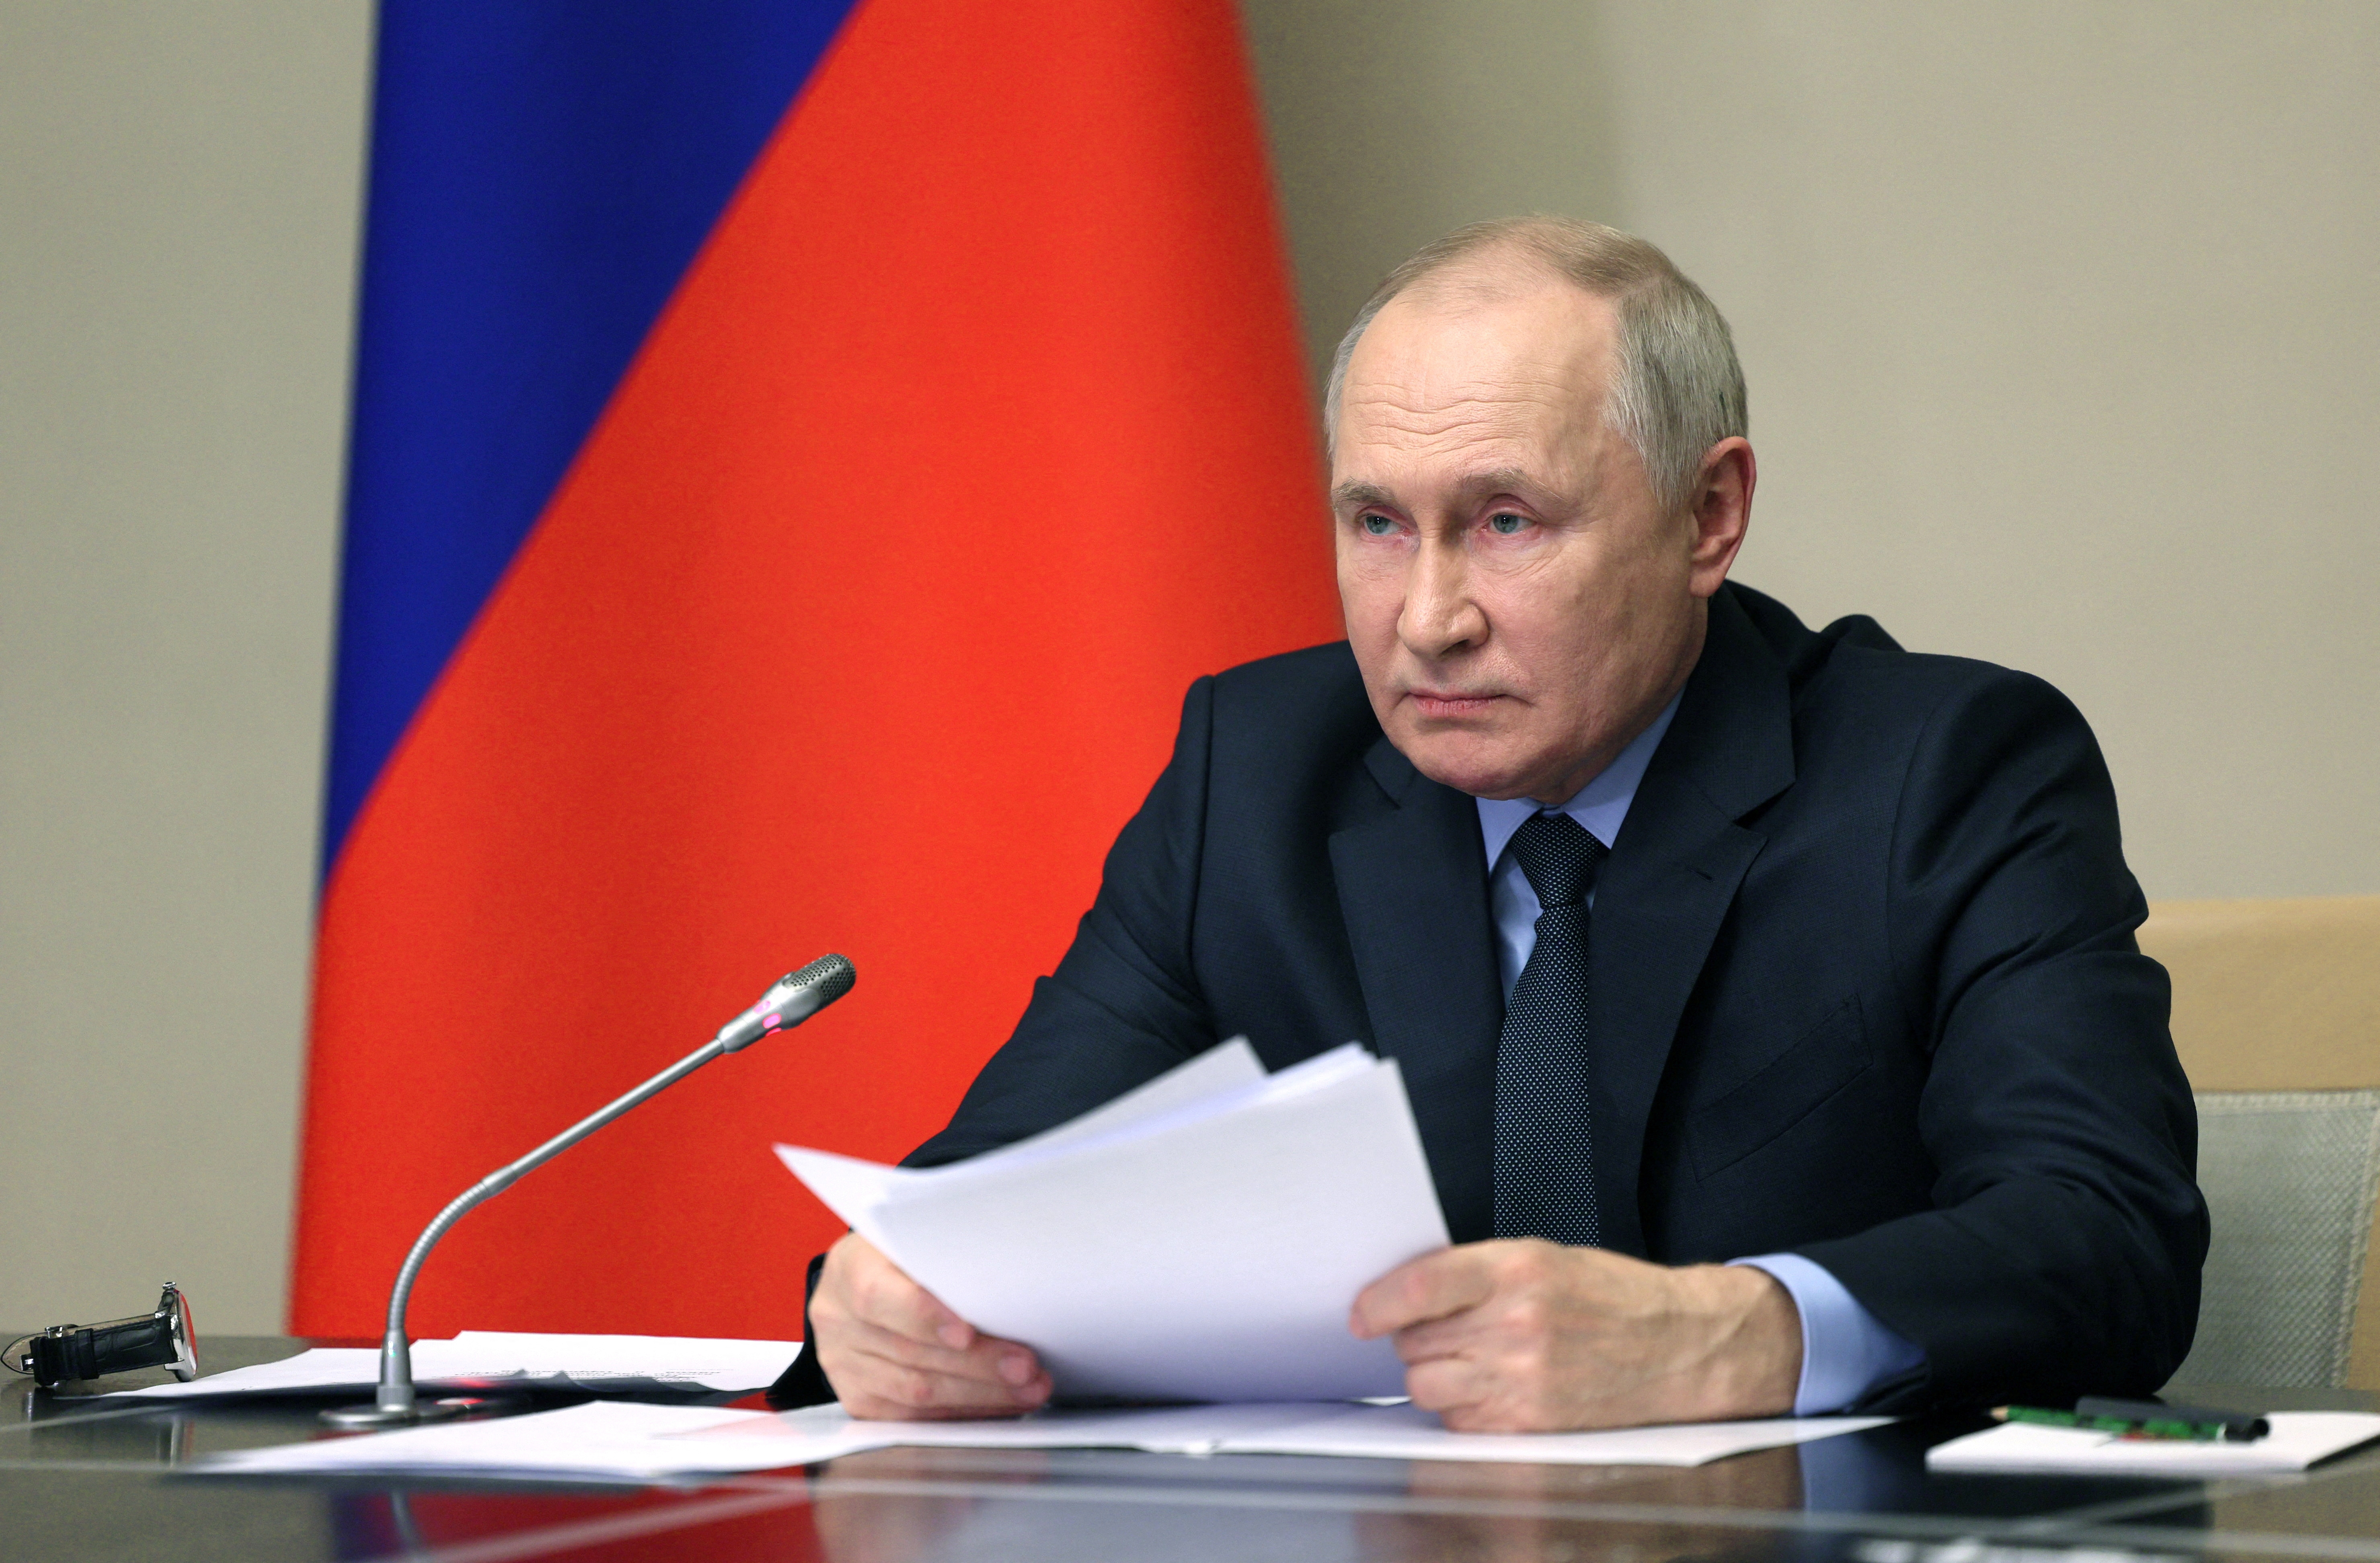 ガザ危機、西側に責任 米は世界的混乱が必要＝プーチン氏 - ロイター (Reuters Japan)